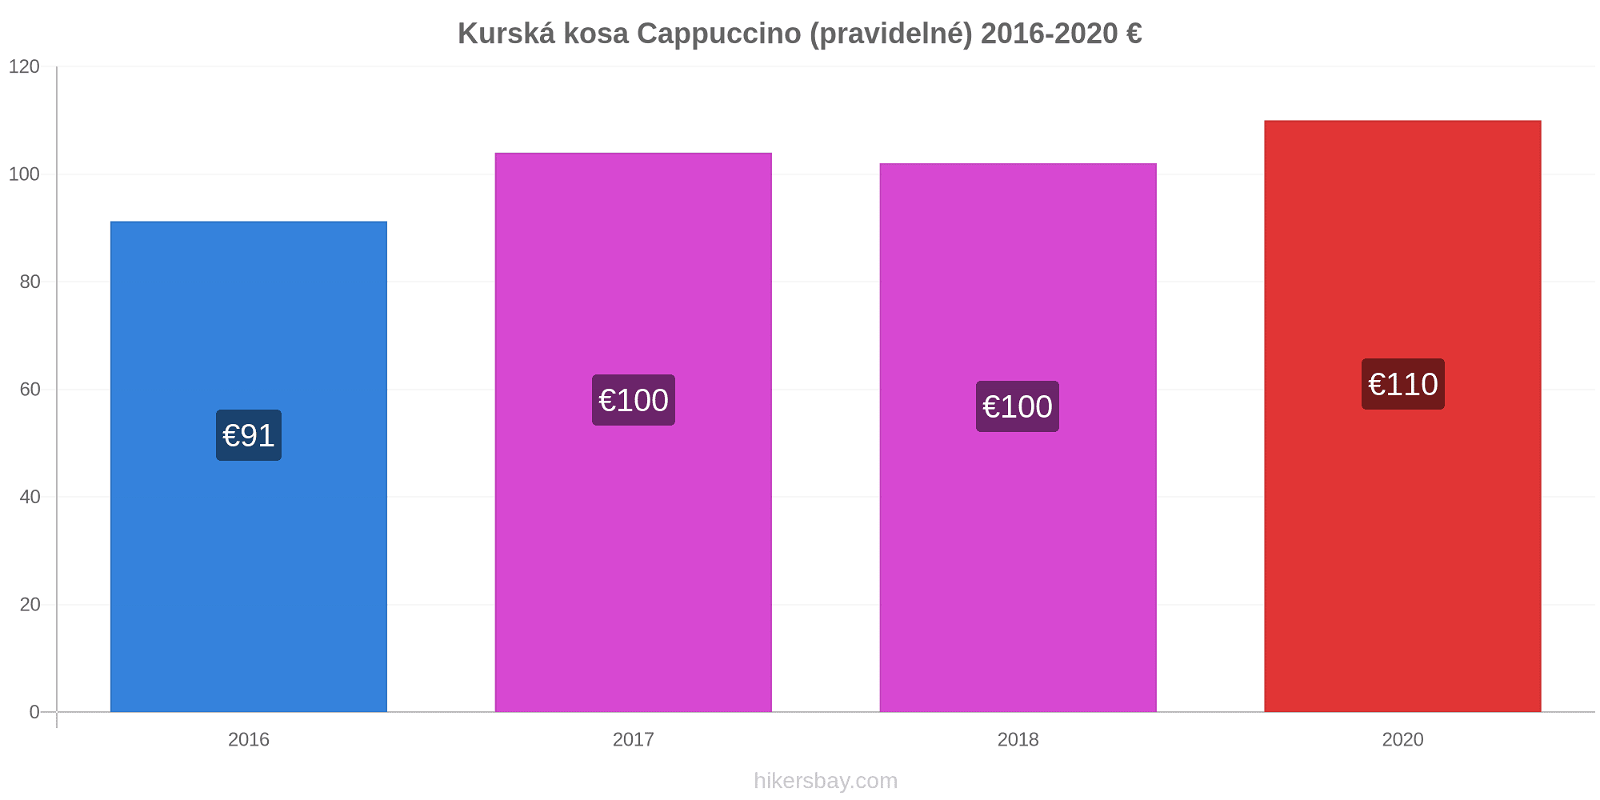 Kurská kosa změny cen Cappuccino (pravidelné) hikersbay.com